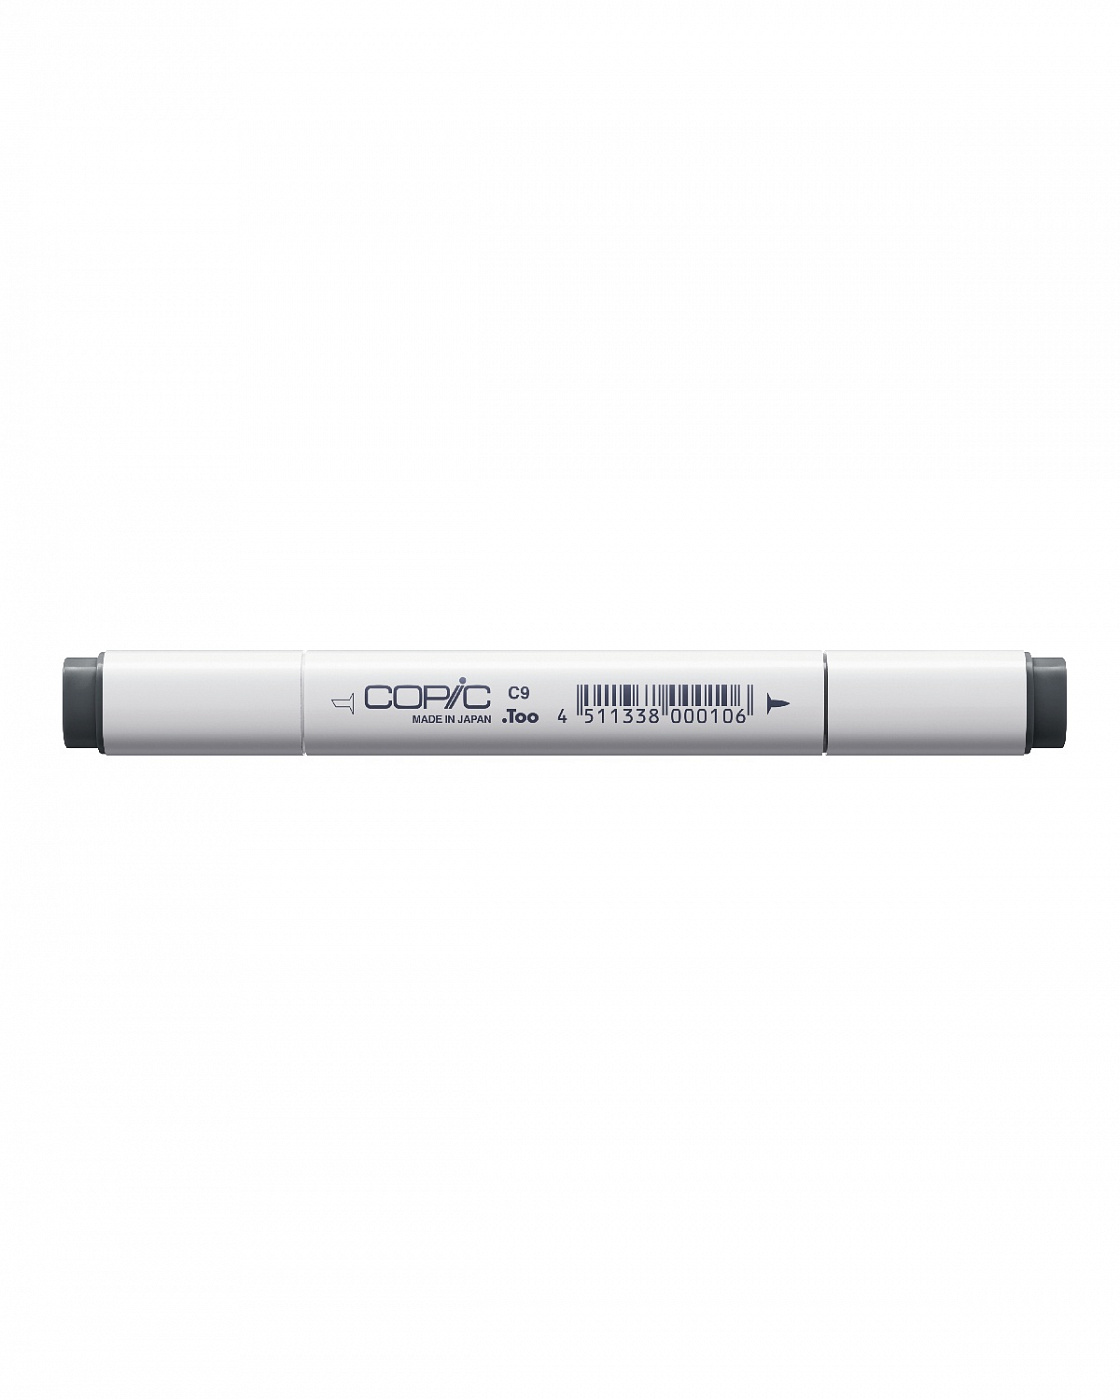 Маркер COPIC C9 (холодный серый, cool gray) (оттенок №9) маркер copic w0 теплый серый warm gray оттенок 0